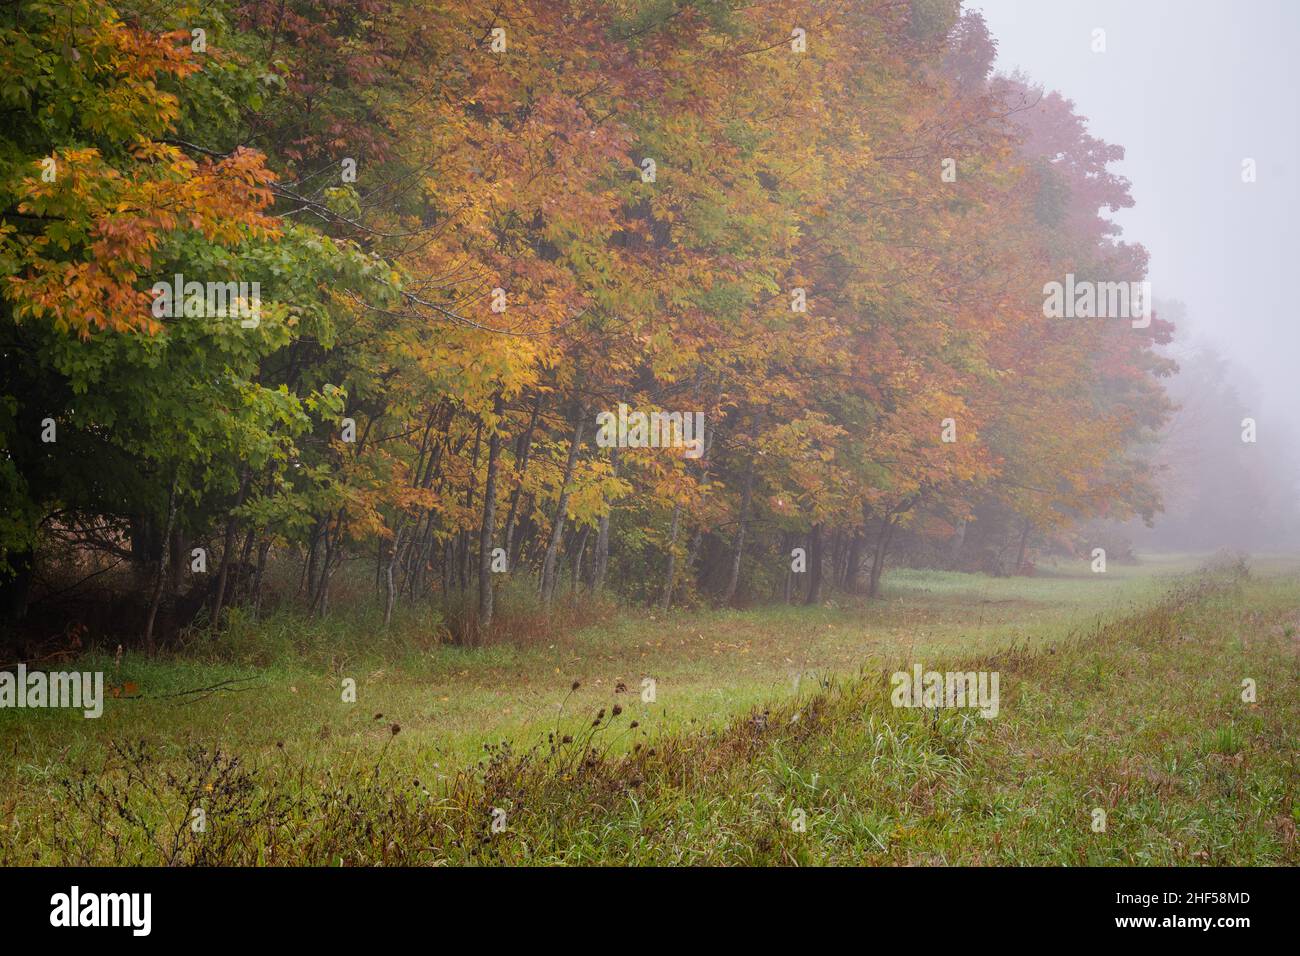 Un exemple de l'écran couleur annuel d'automne qui se produit chaque automne dans le comté de Door, Wisconsin, qui est une destination touristique majeure. Banque D'Images